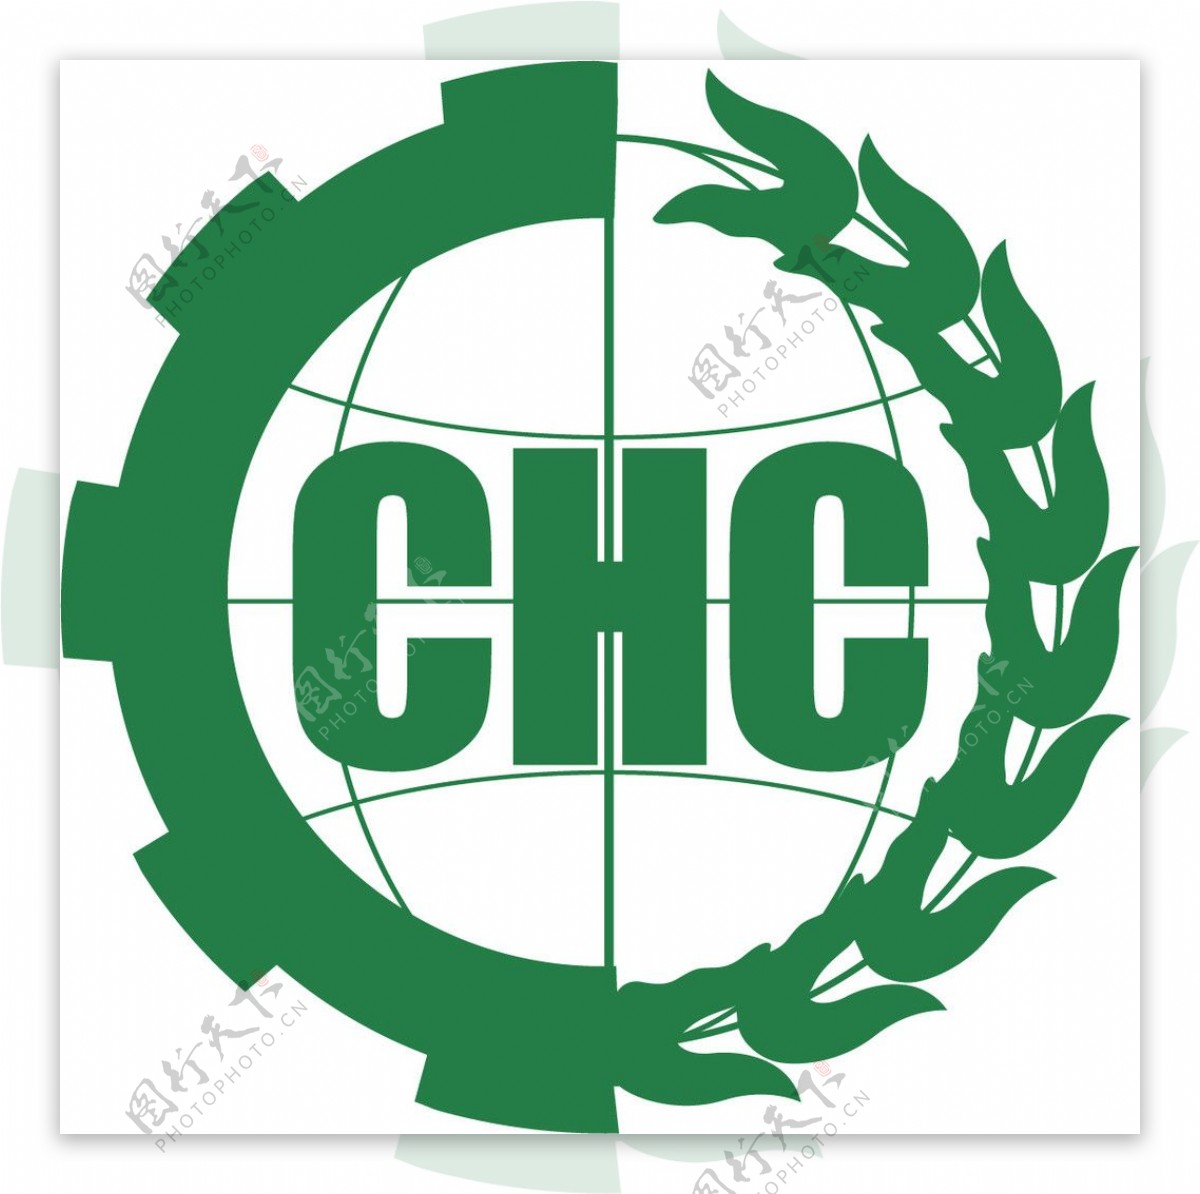 CHC有机产品认证标志